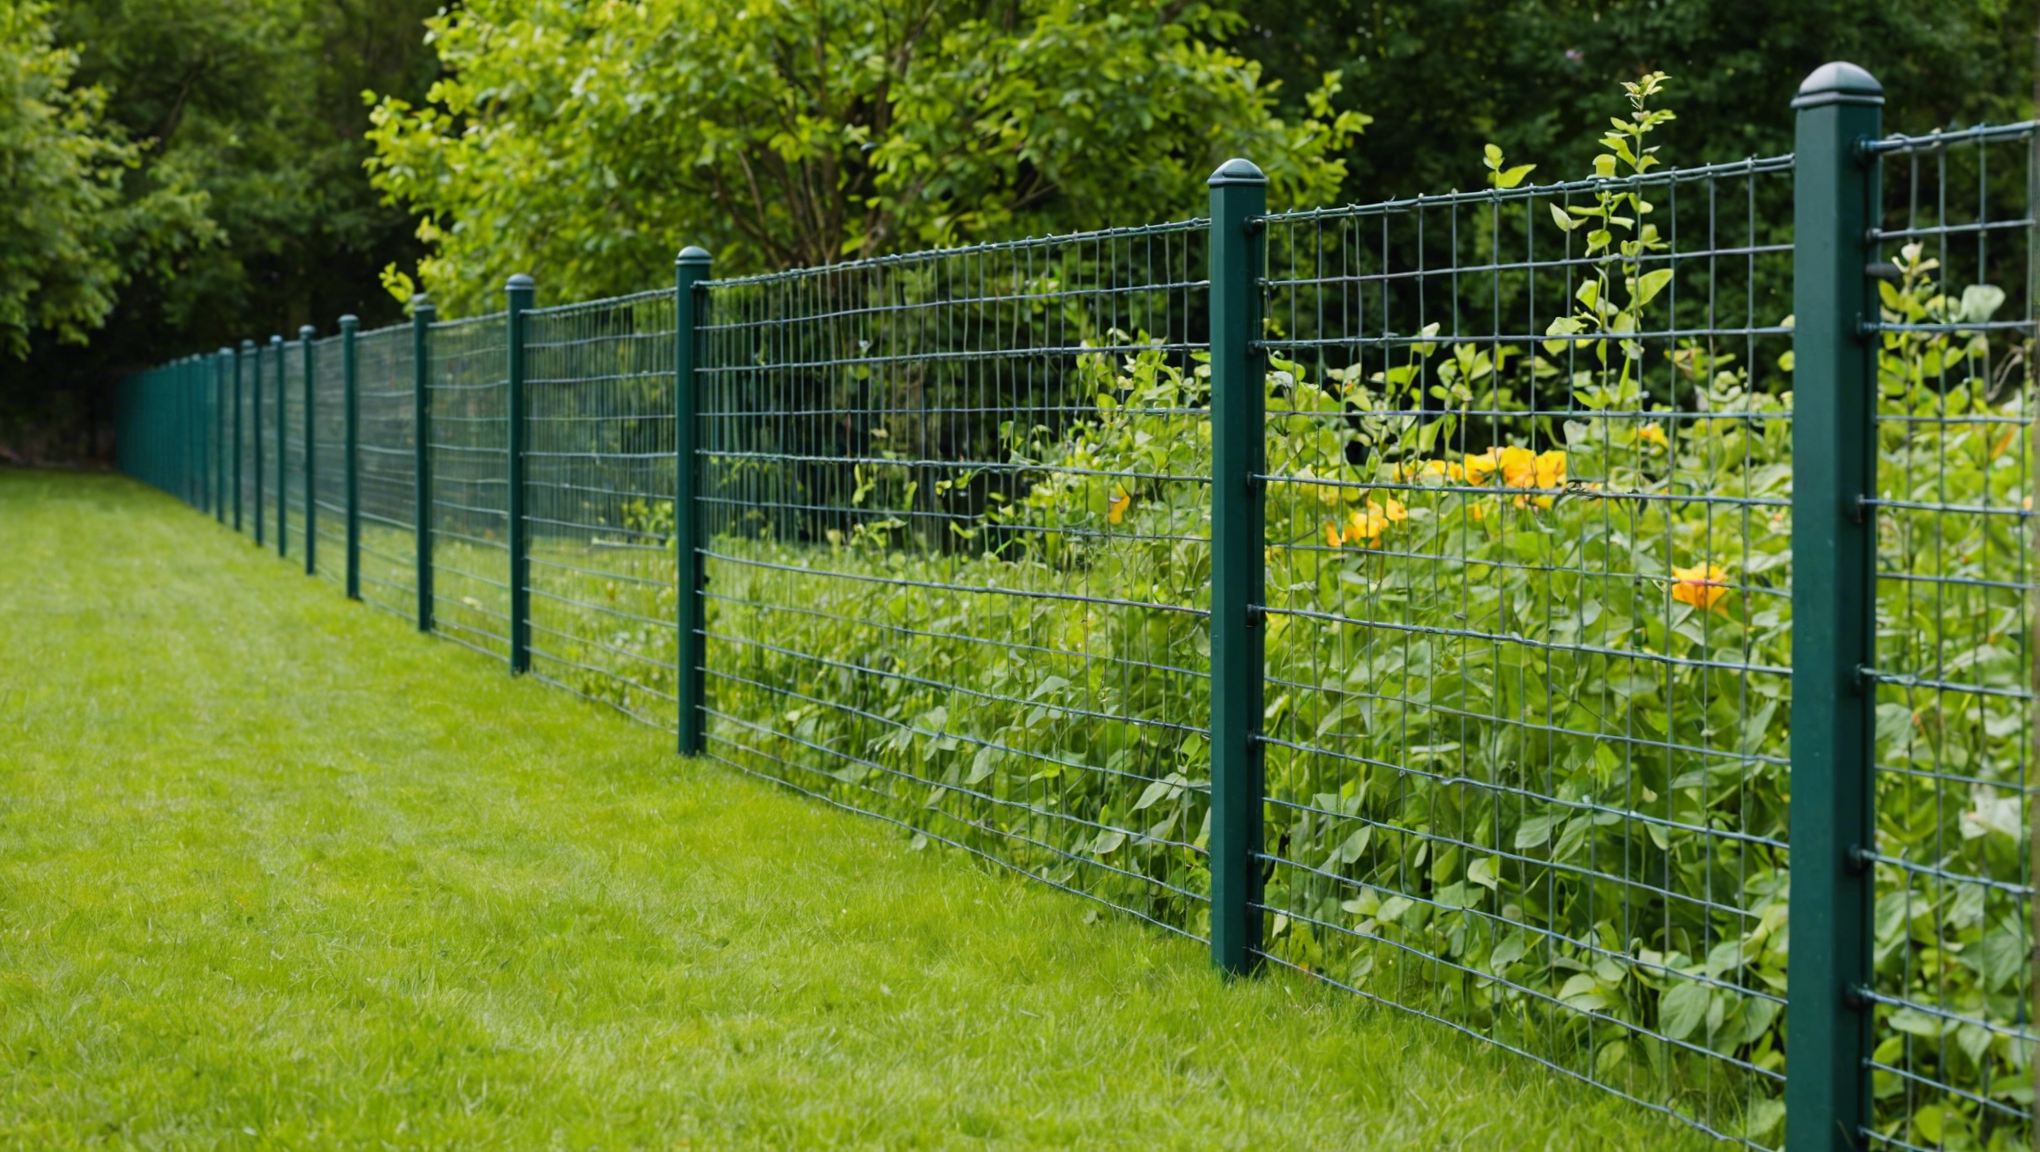 découvrez les avantages de choisir un grillage comme clôture pour votre jardin, un choix pratique et esthétique pour délimiter et sécuriser votre espace extérieur.